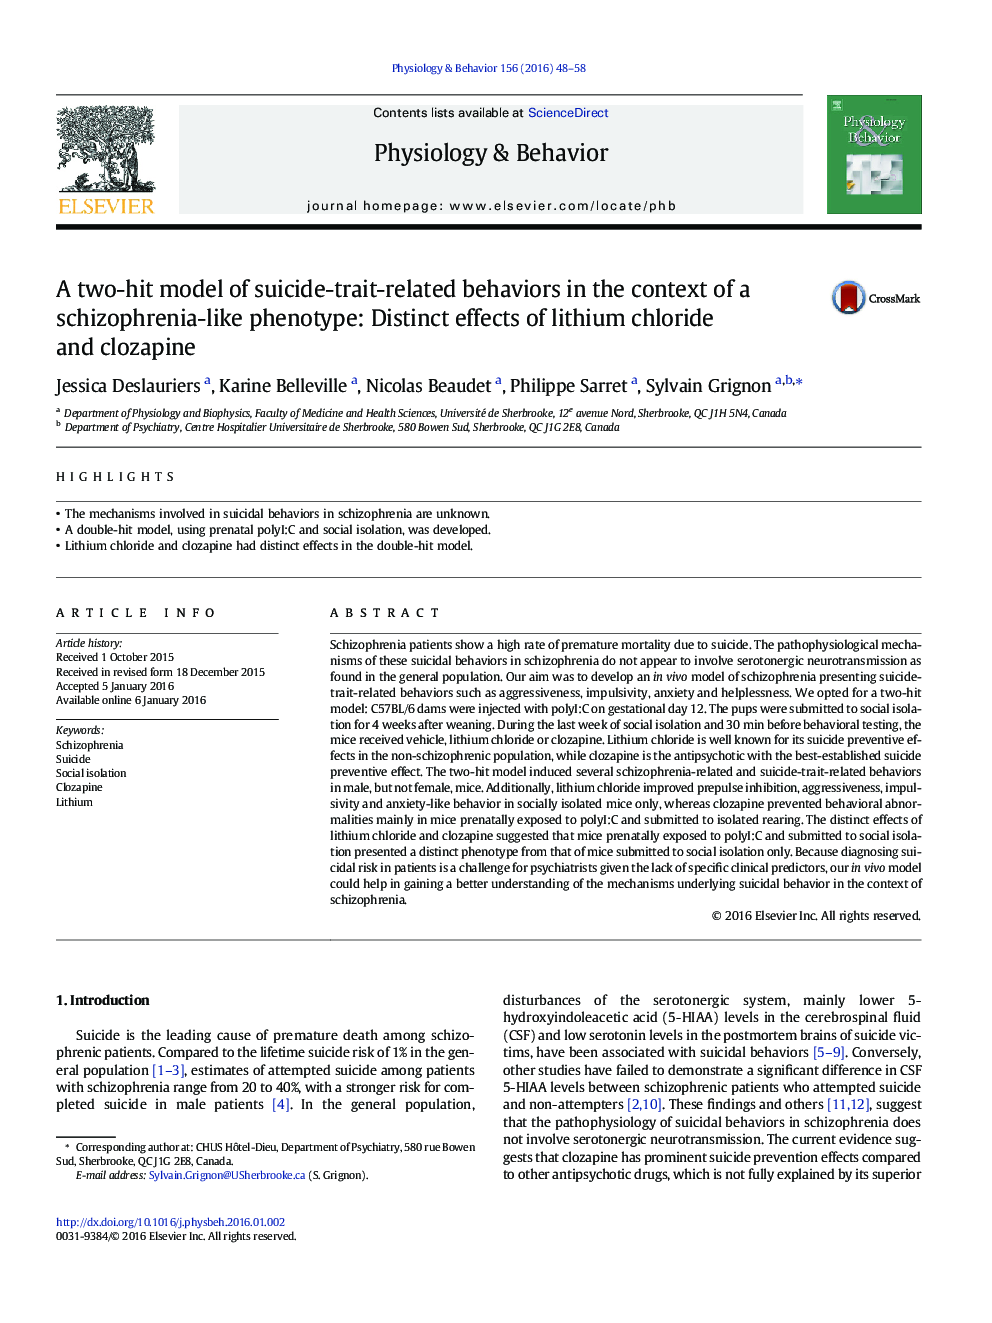 یک مدل دو نفره رفتارهای مرتبط با خودکشی در زمینه فنوتیپ شبیه به اسکیزوفرنی: اثرات متمایز لیتیم کلرید و کلوزاپین 